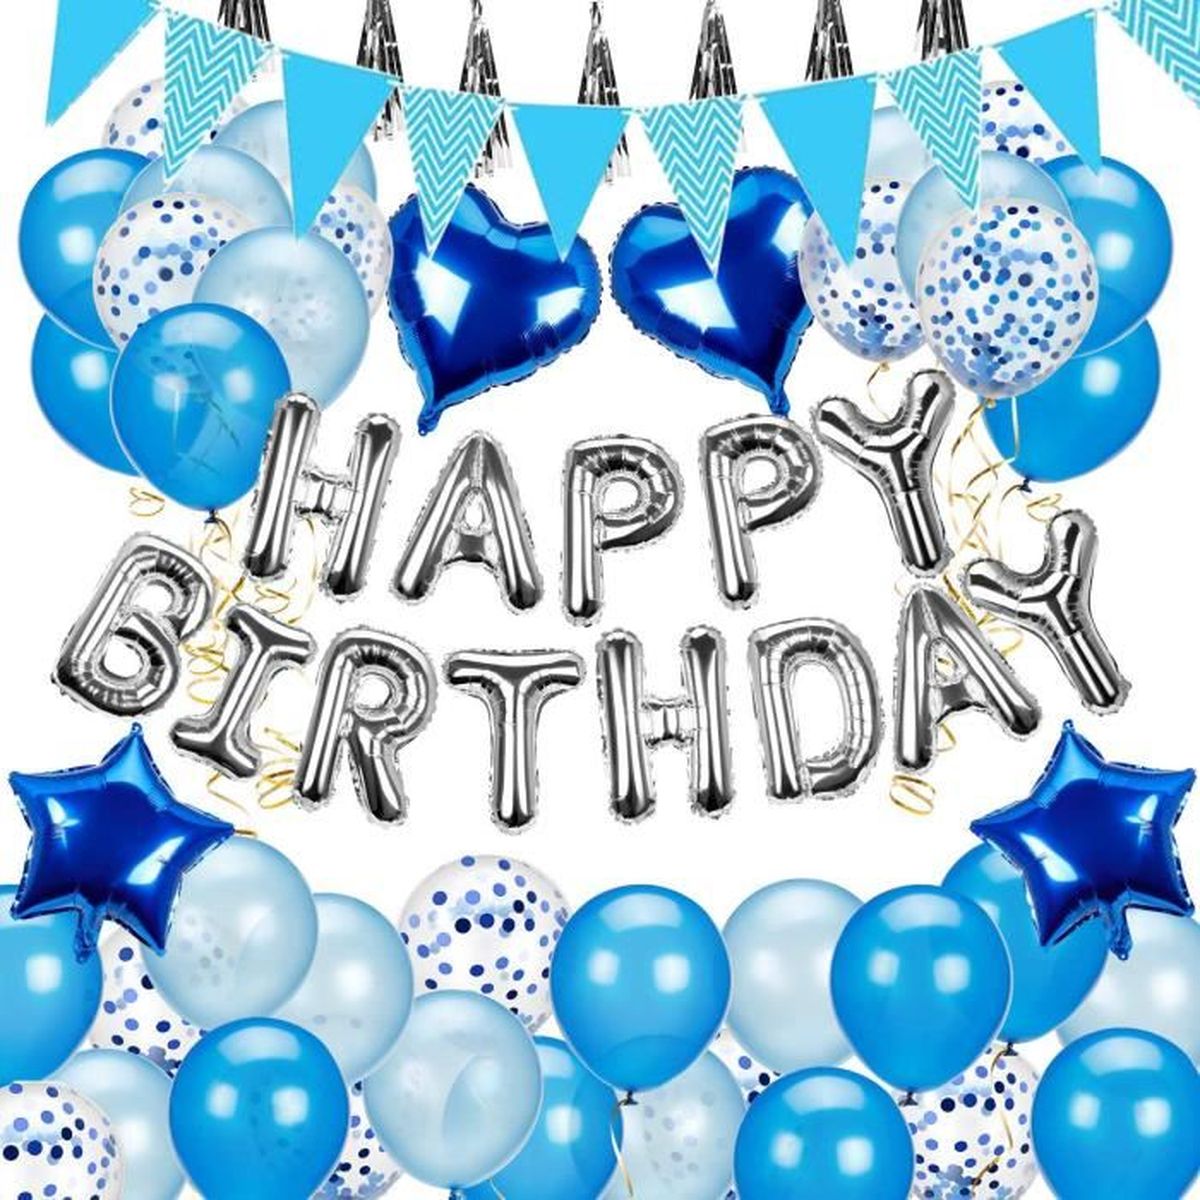 MagiDeal 13pcs/Set Ballon Lettres Gonflable Happy Birthday Ballon Guirlande Suspendu pour Anniversaire Or clair